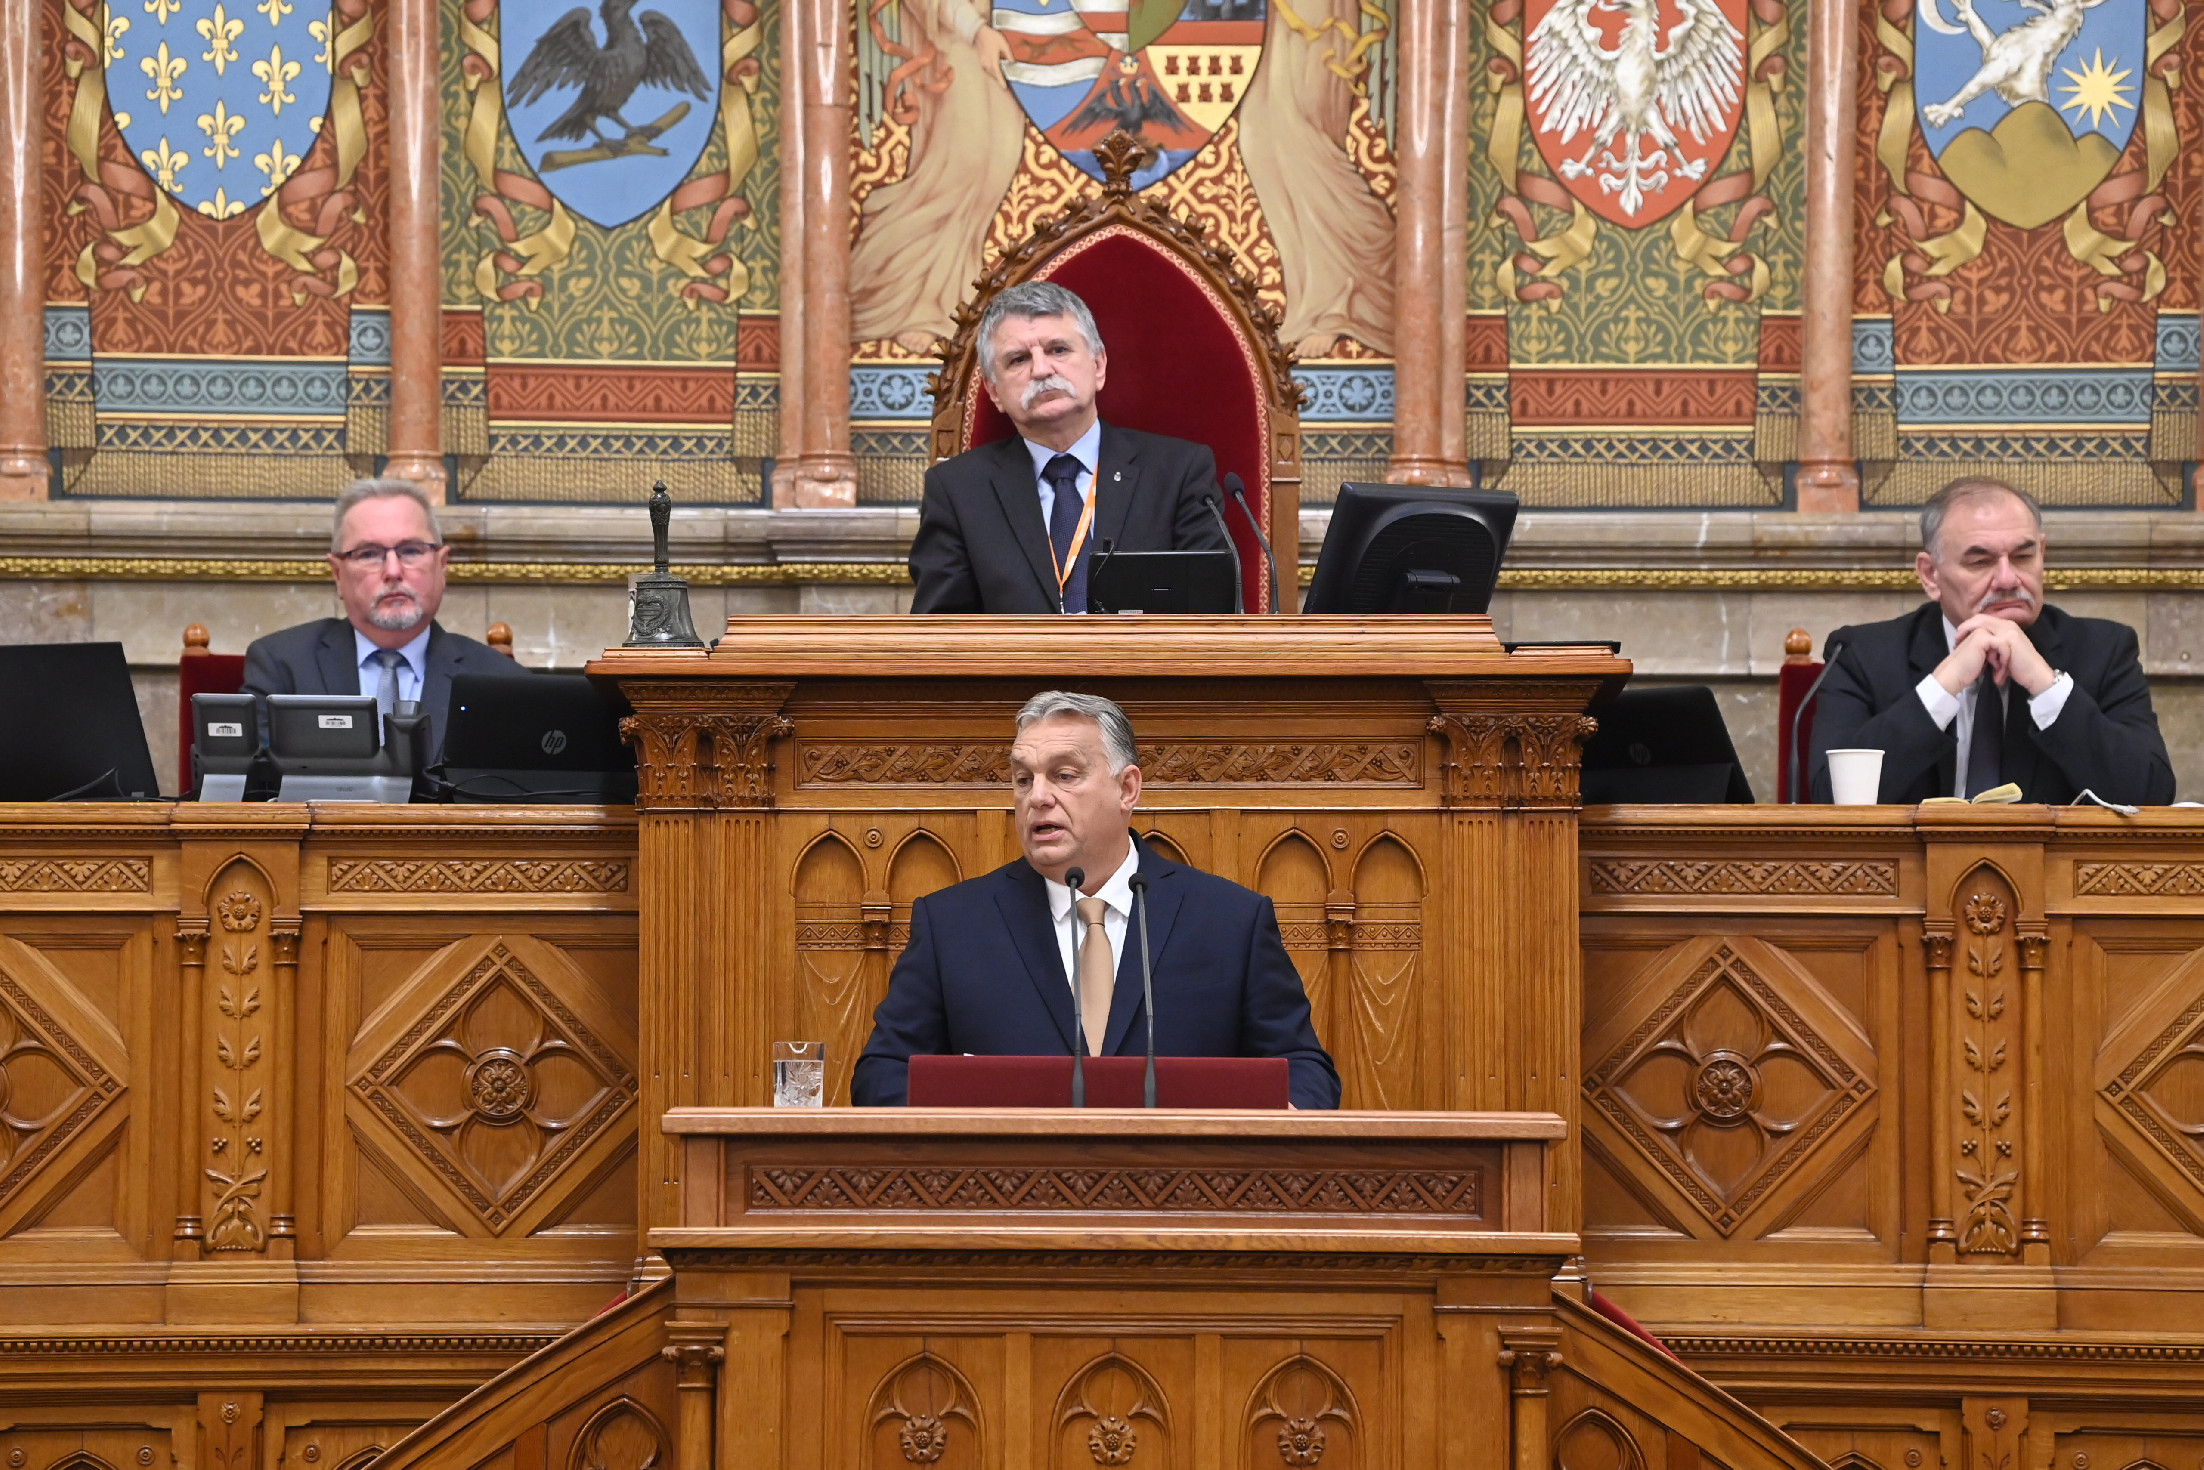 Csaknem 860 ezer forinttal lehet több Orbán Viktor fizetése márciustól